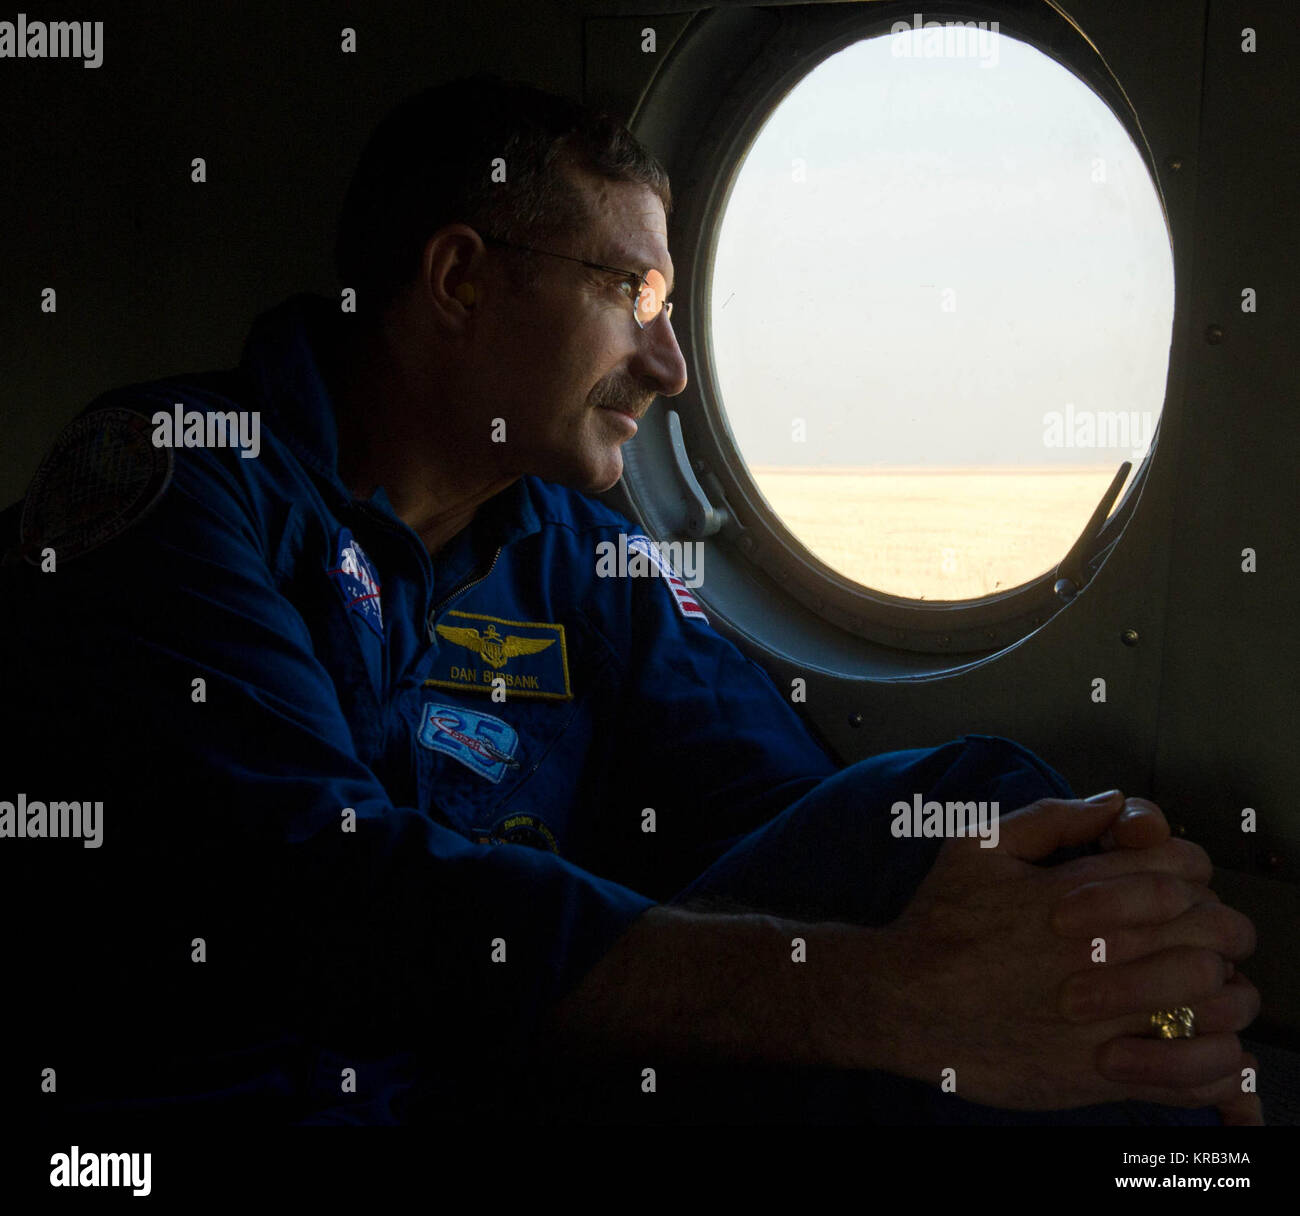 Expedition 30 Commander Dan Burbank schaut aus dem Fenster seines Hubschraubers rüstet sich für Kustanai von der Sojus-TMA-22-Kapsel Landeplatz außerhalb der Stadt Arkalyk in Kasachstan am Freitag, 27. April 2012 abzuweichen. Astronauten Burbank, russische Kosmonauten und Shkaplerov Ivanishin kehren aus mehr als fünf Monate an Bord der Internationalen Raumstation, wo sie als Mitglieder der Expedition 29 und 30 Mannschaften serviert. Photo Credit: (NASA/Carla Cioffi) Sojus TMA-22 Besatzungsmitglied Dan Burbank schaut aus seinem Hubschrauber Stockfoto